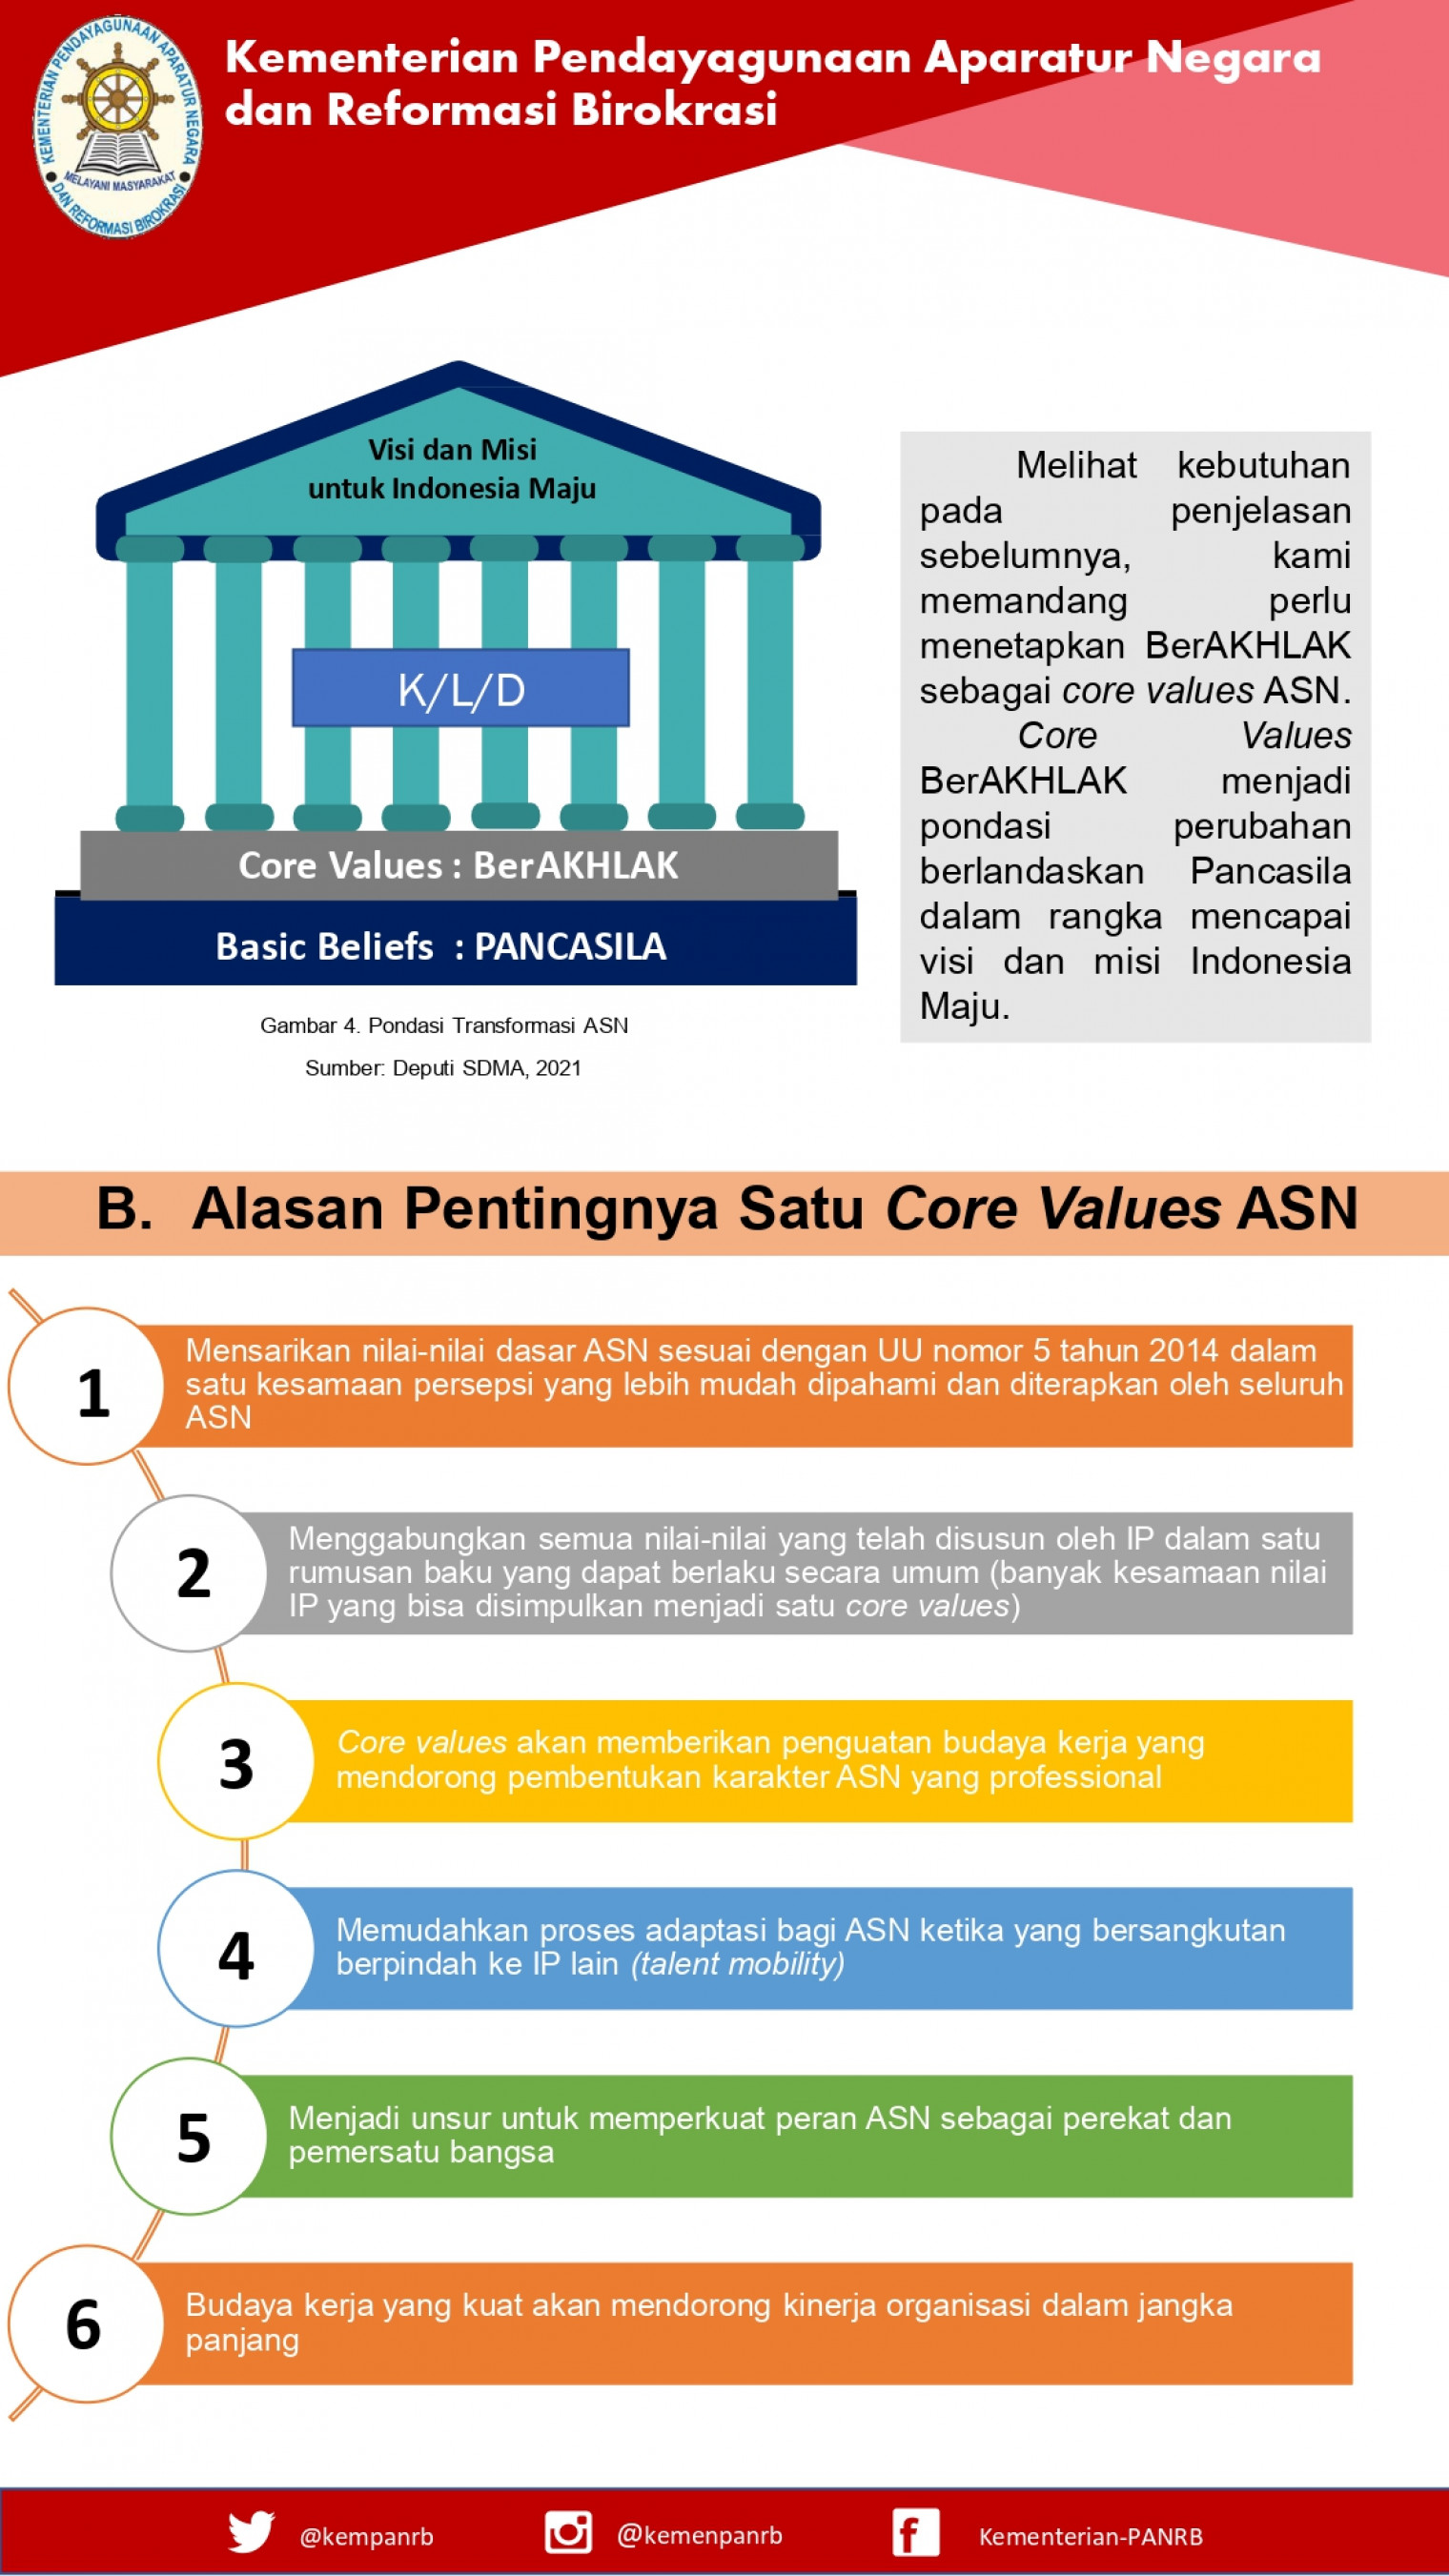 Core value asn adalah